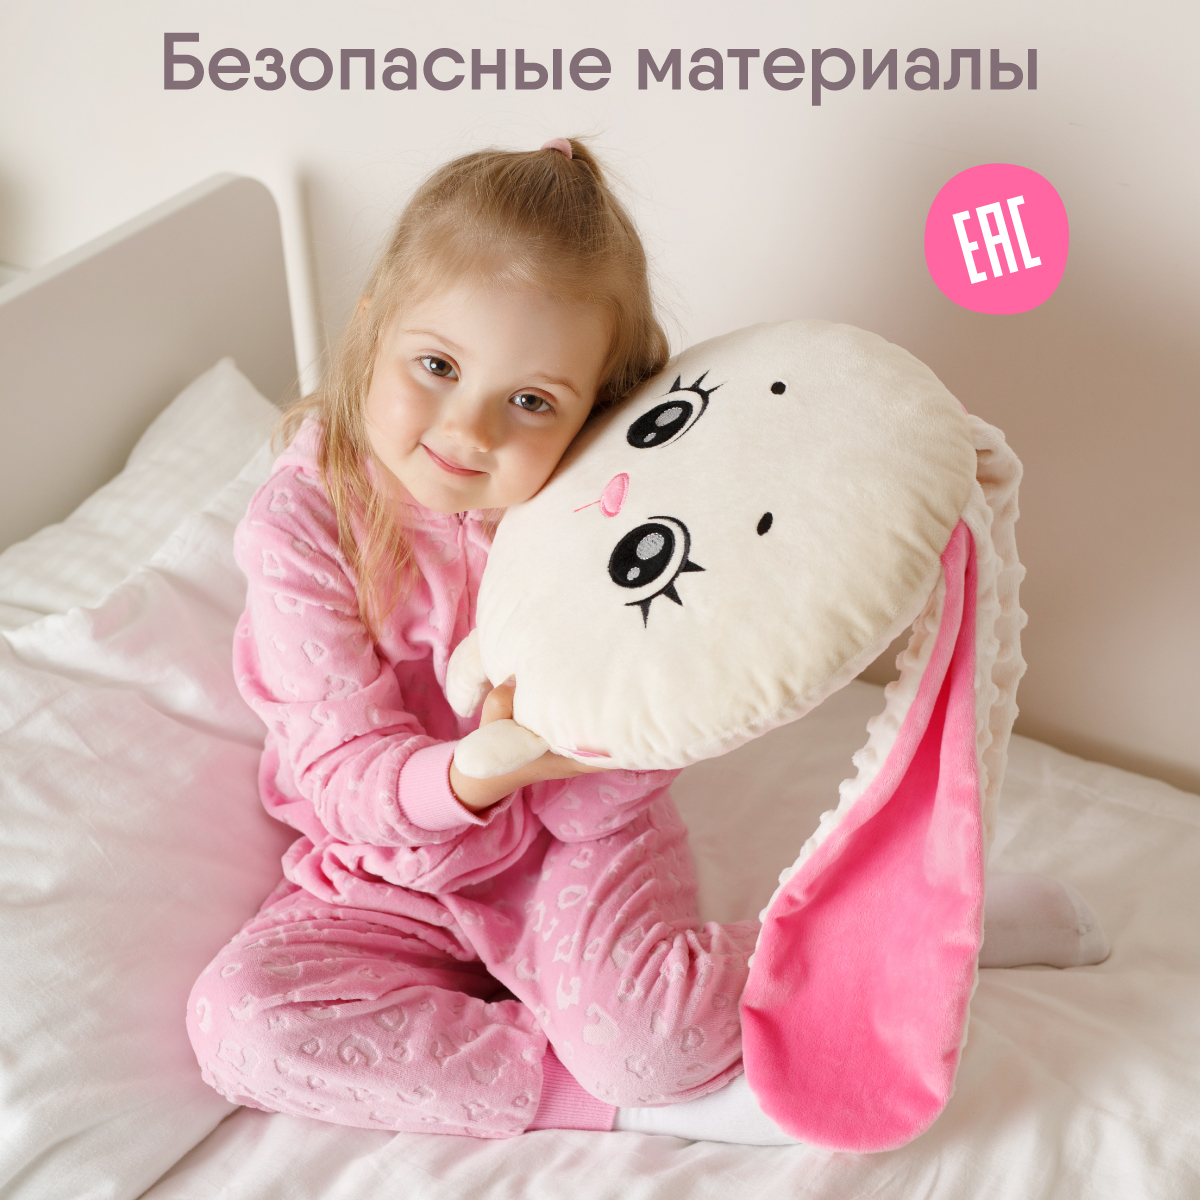 Игрушка-подушка мягкая Мякиши большая Зайка Лия подарок детям для сна - фото 4